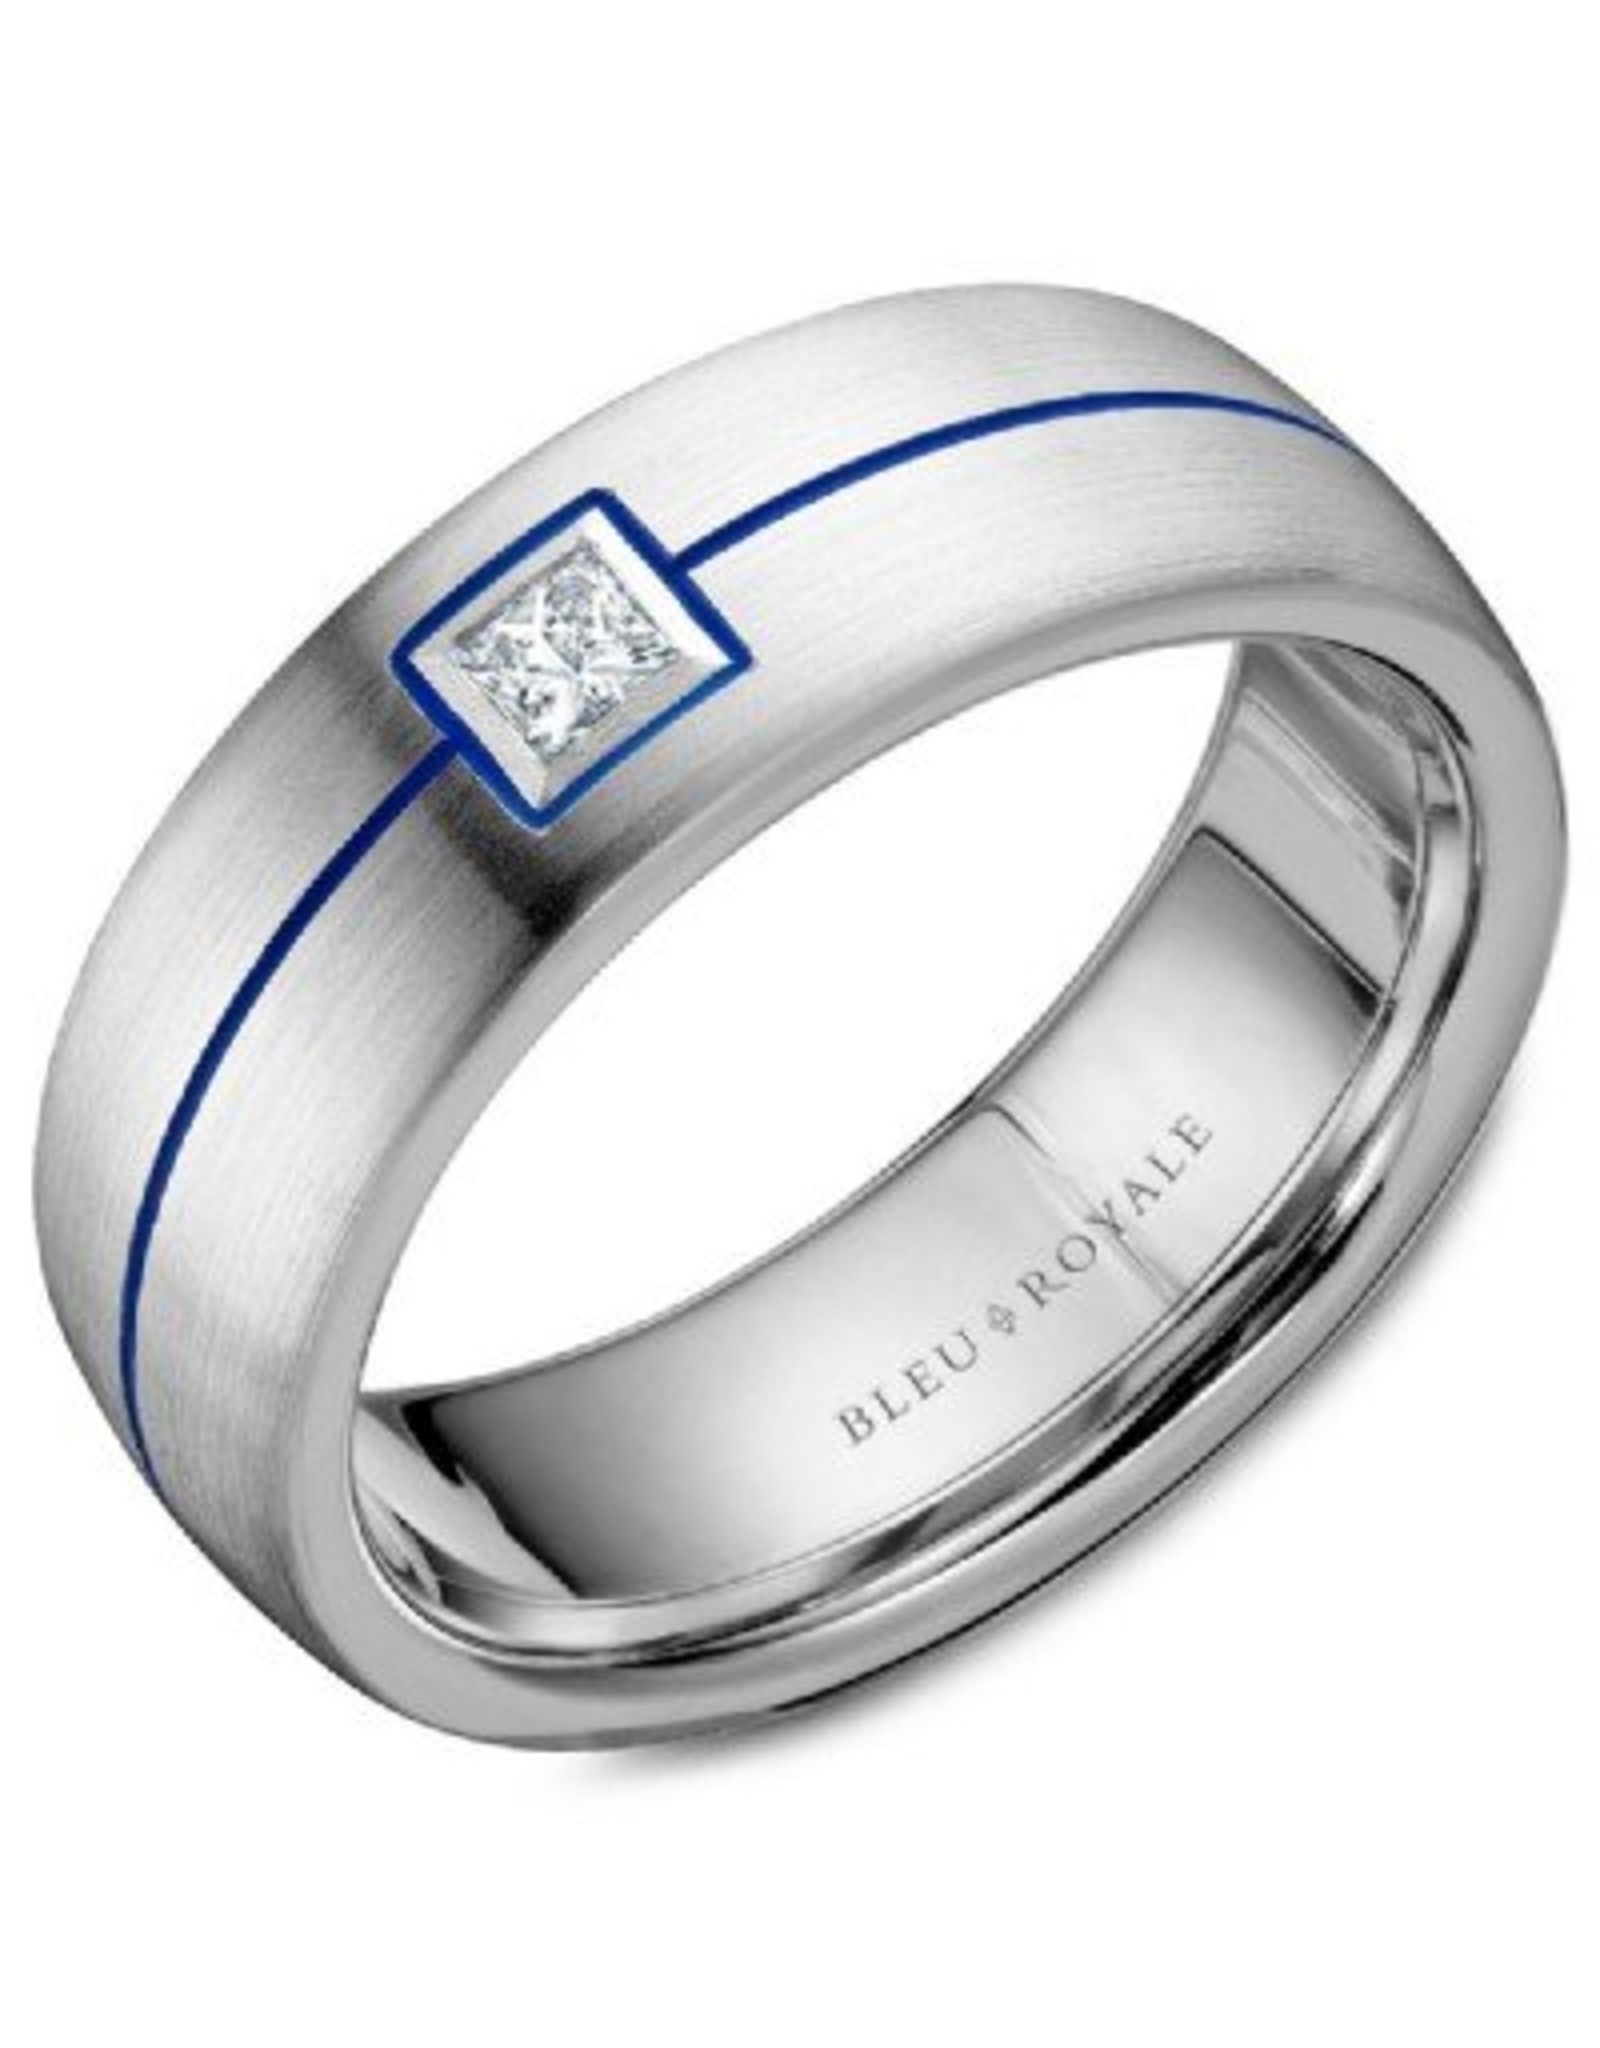 Crown Ring Princess Diamond with Blue Enamel 14KW (Bleu Royale)